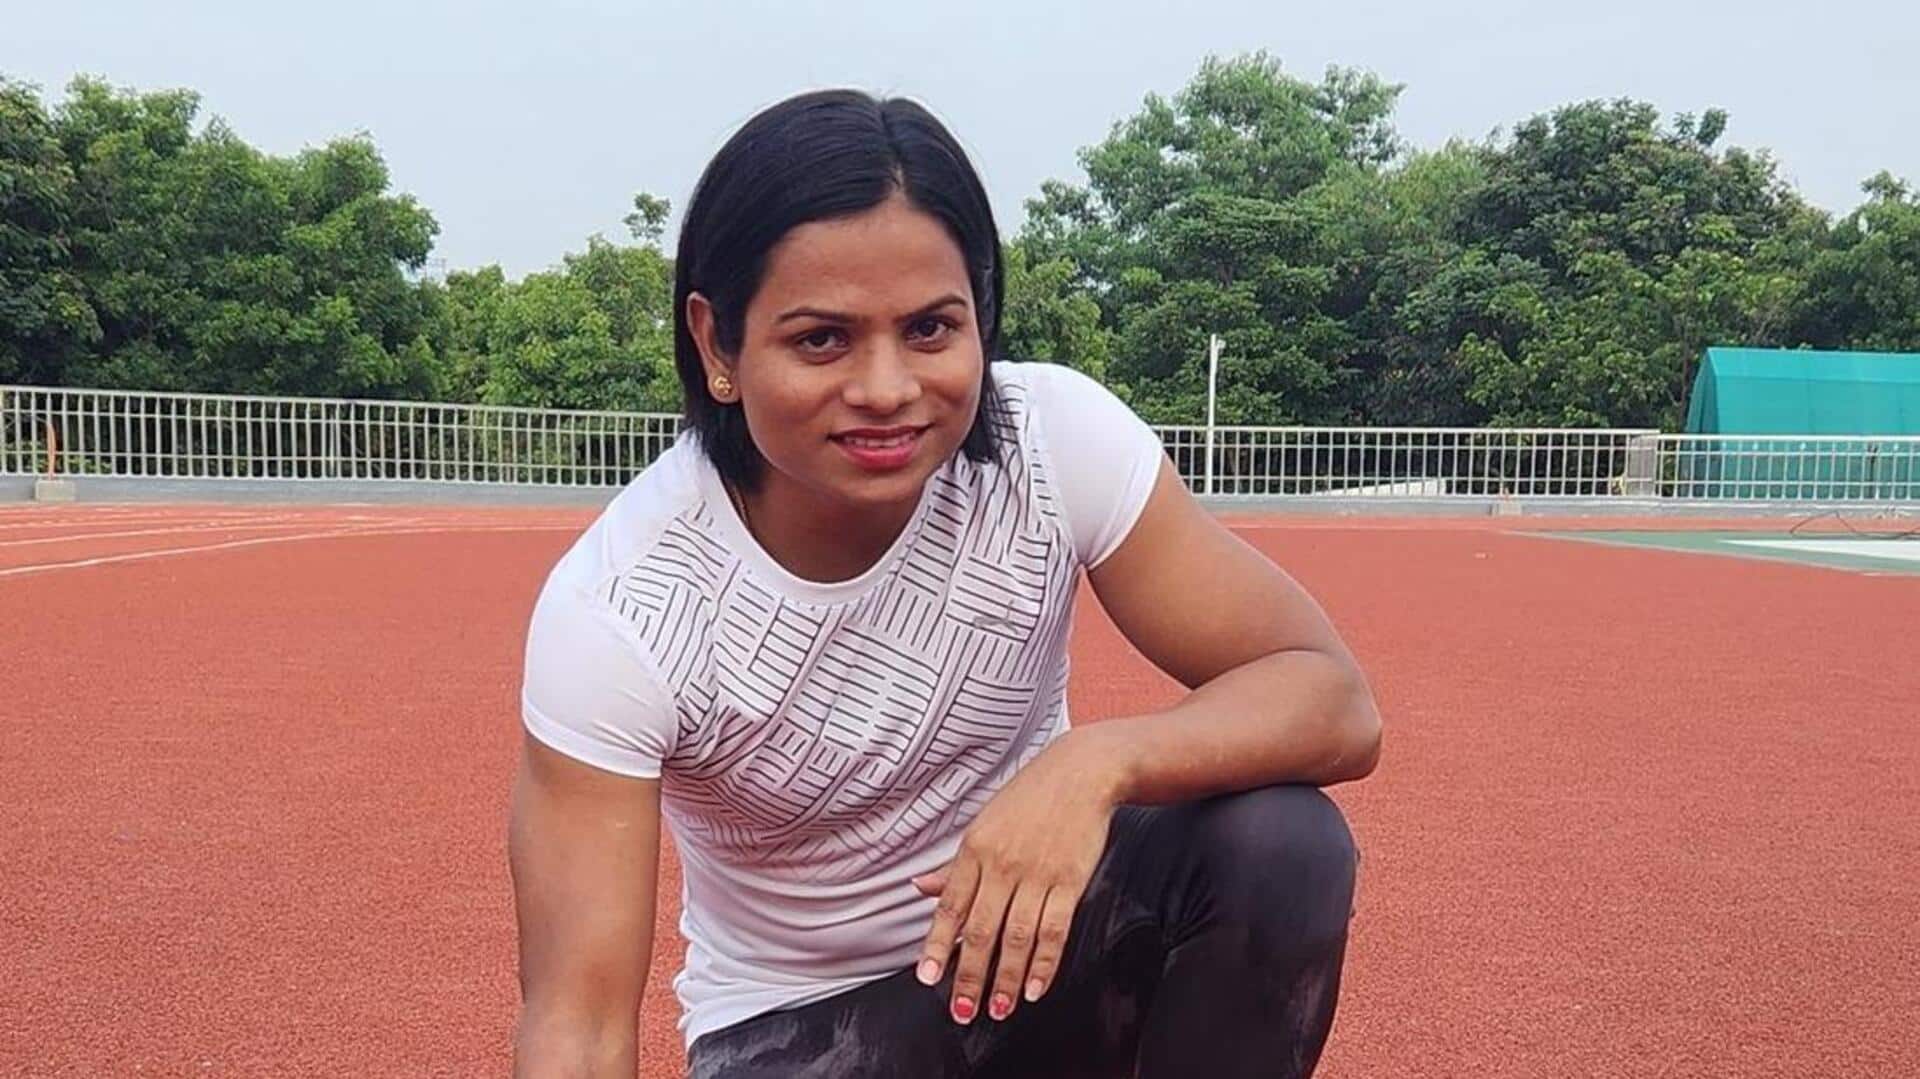 भारतीय महिला धावक दुती चंद पर लगा 4 साल का प्रतिबंध, डोप टेस्ट में हुई विफल 